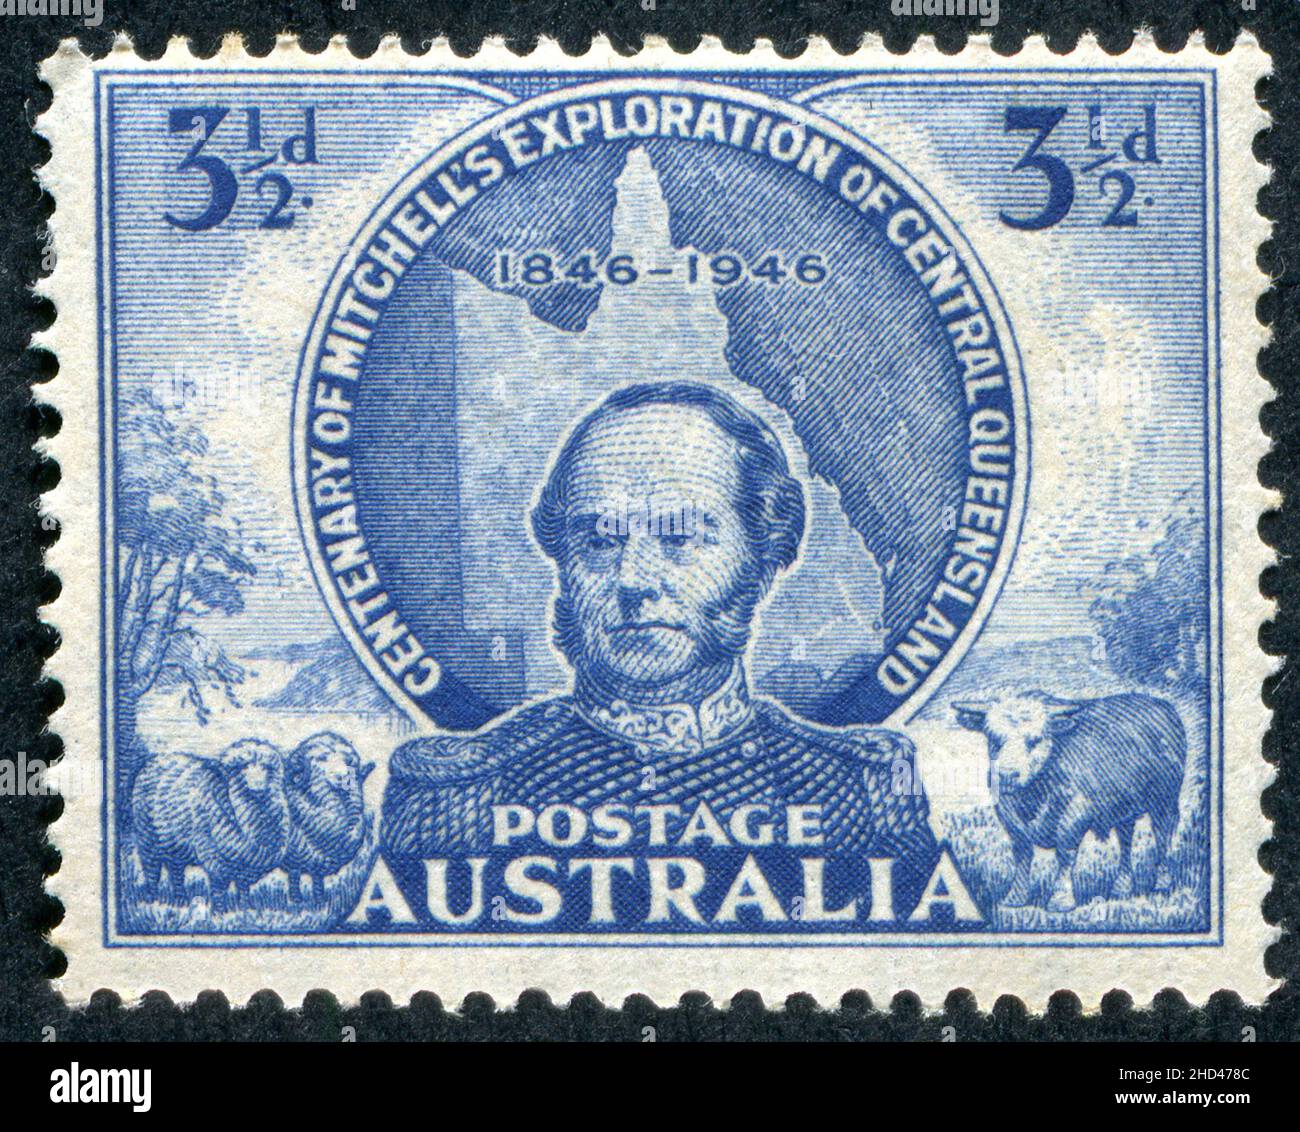 A 1946 Issue 3 1/2D Australische Briefmarke zum Gedenken an den 100. Jahrestag von Sir Thomas Mitchells Erkundung von Central Queensland, Australien. Der Stempel wurde von Frank D. Manley entworfen und graviert. Stockfoto